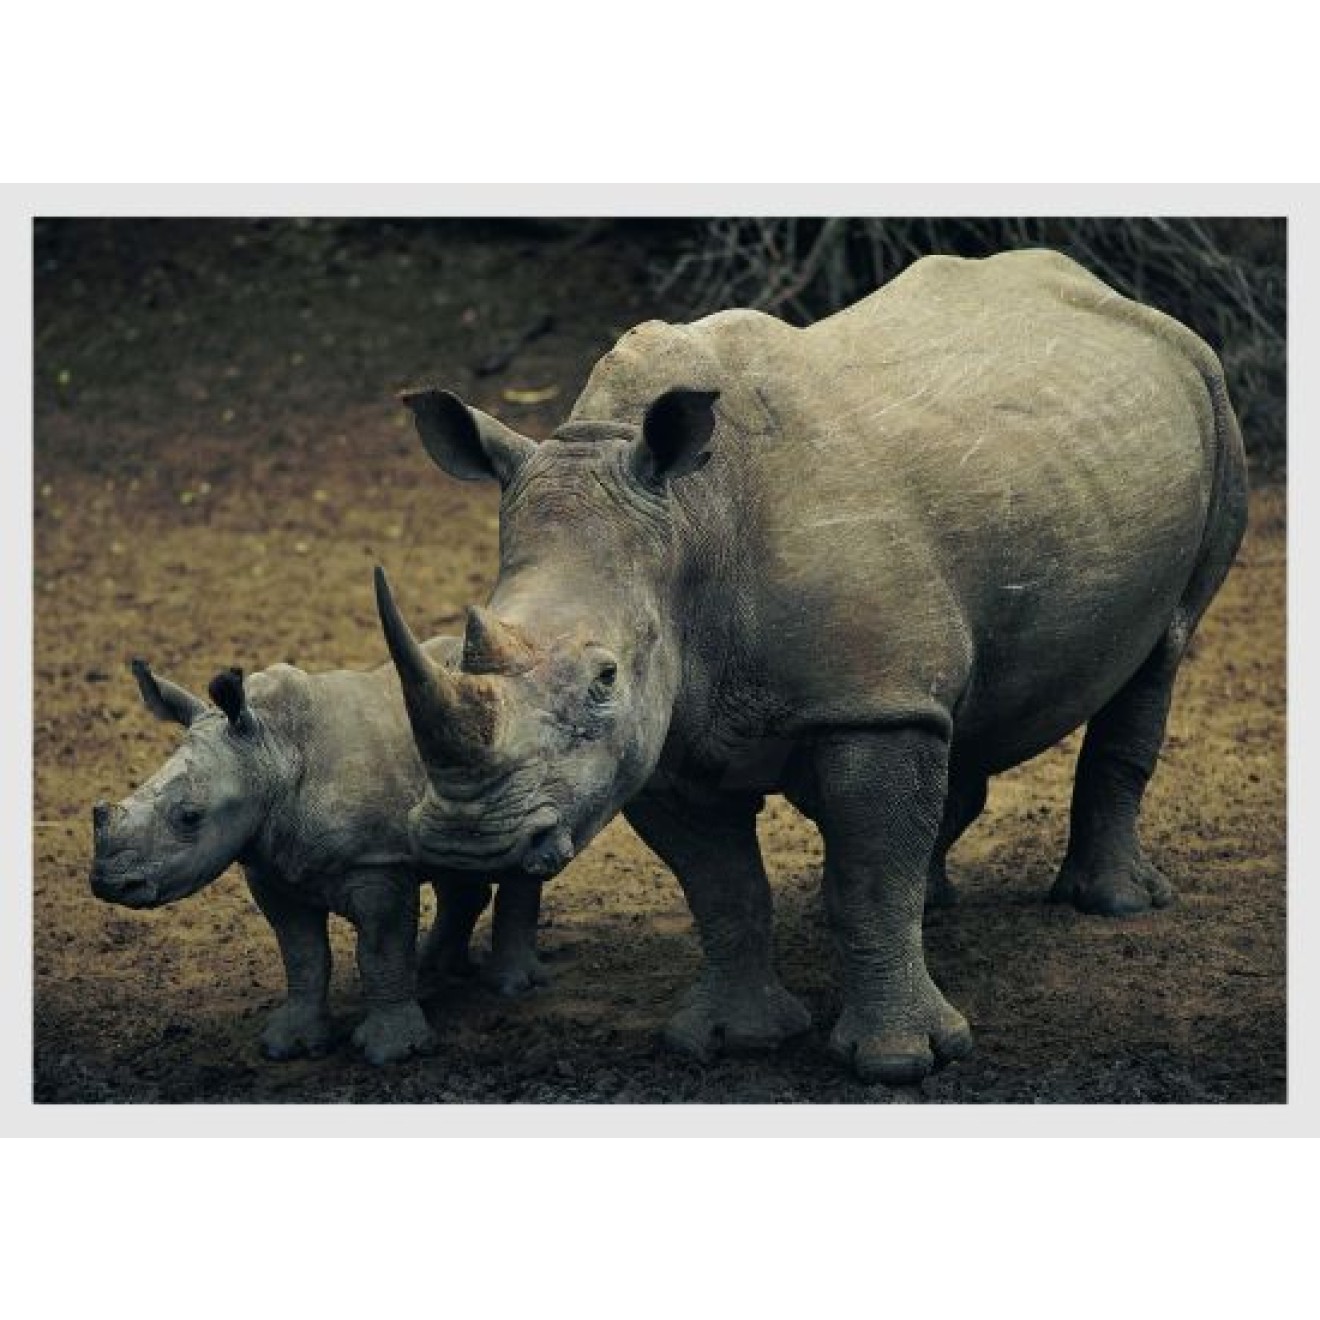 Rhino with cub